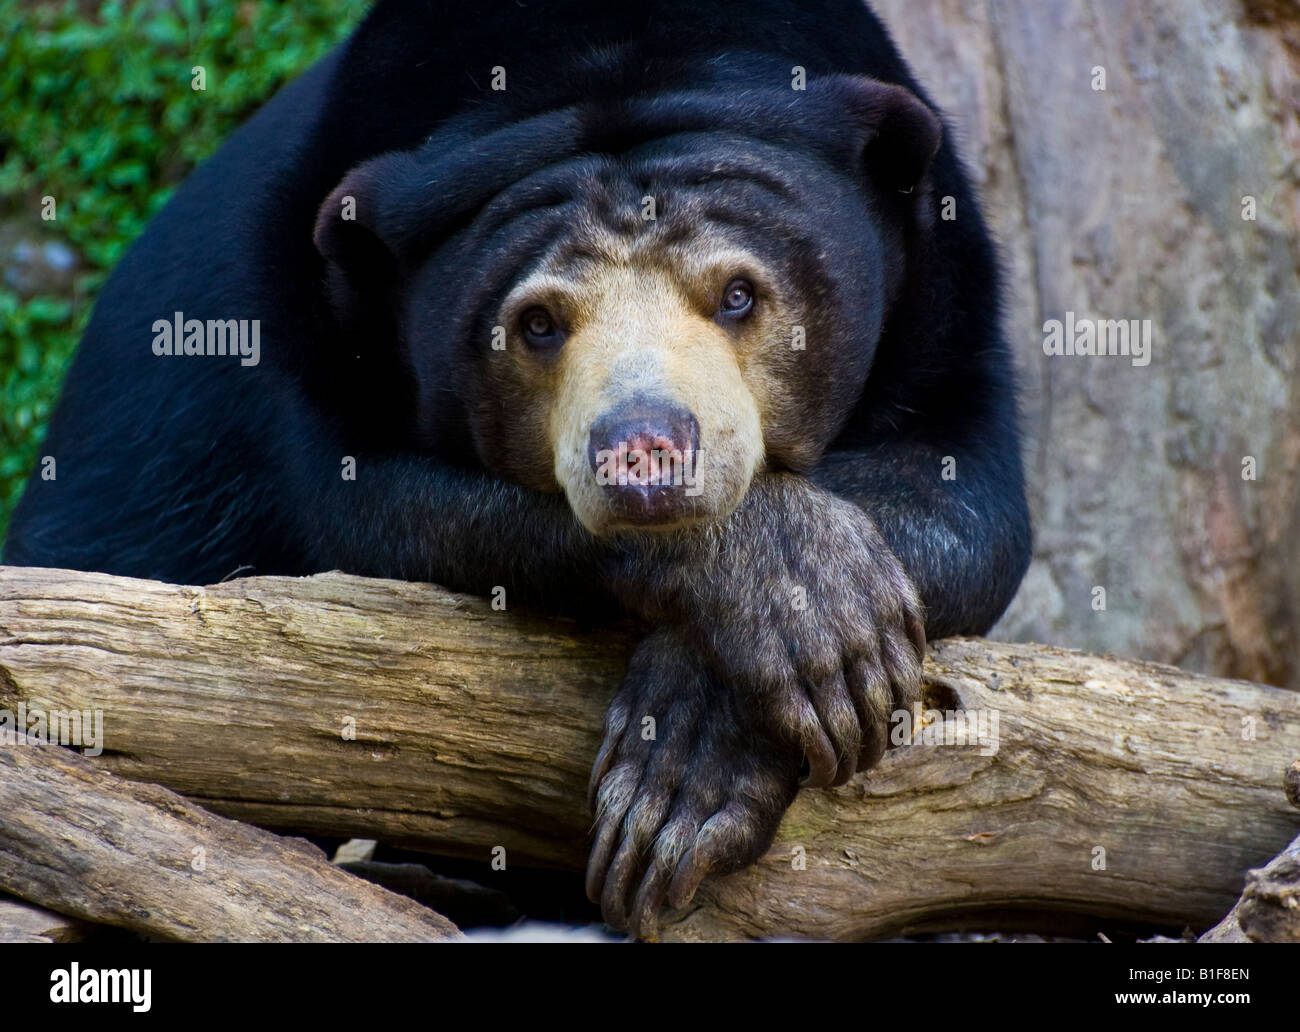 A sun bear (Helarctos malayanus) at Wellington Zoo Stock Photo